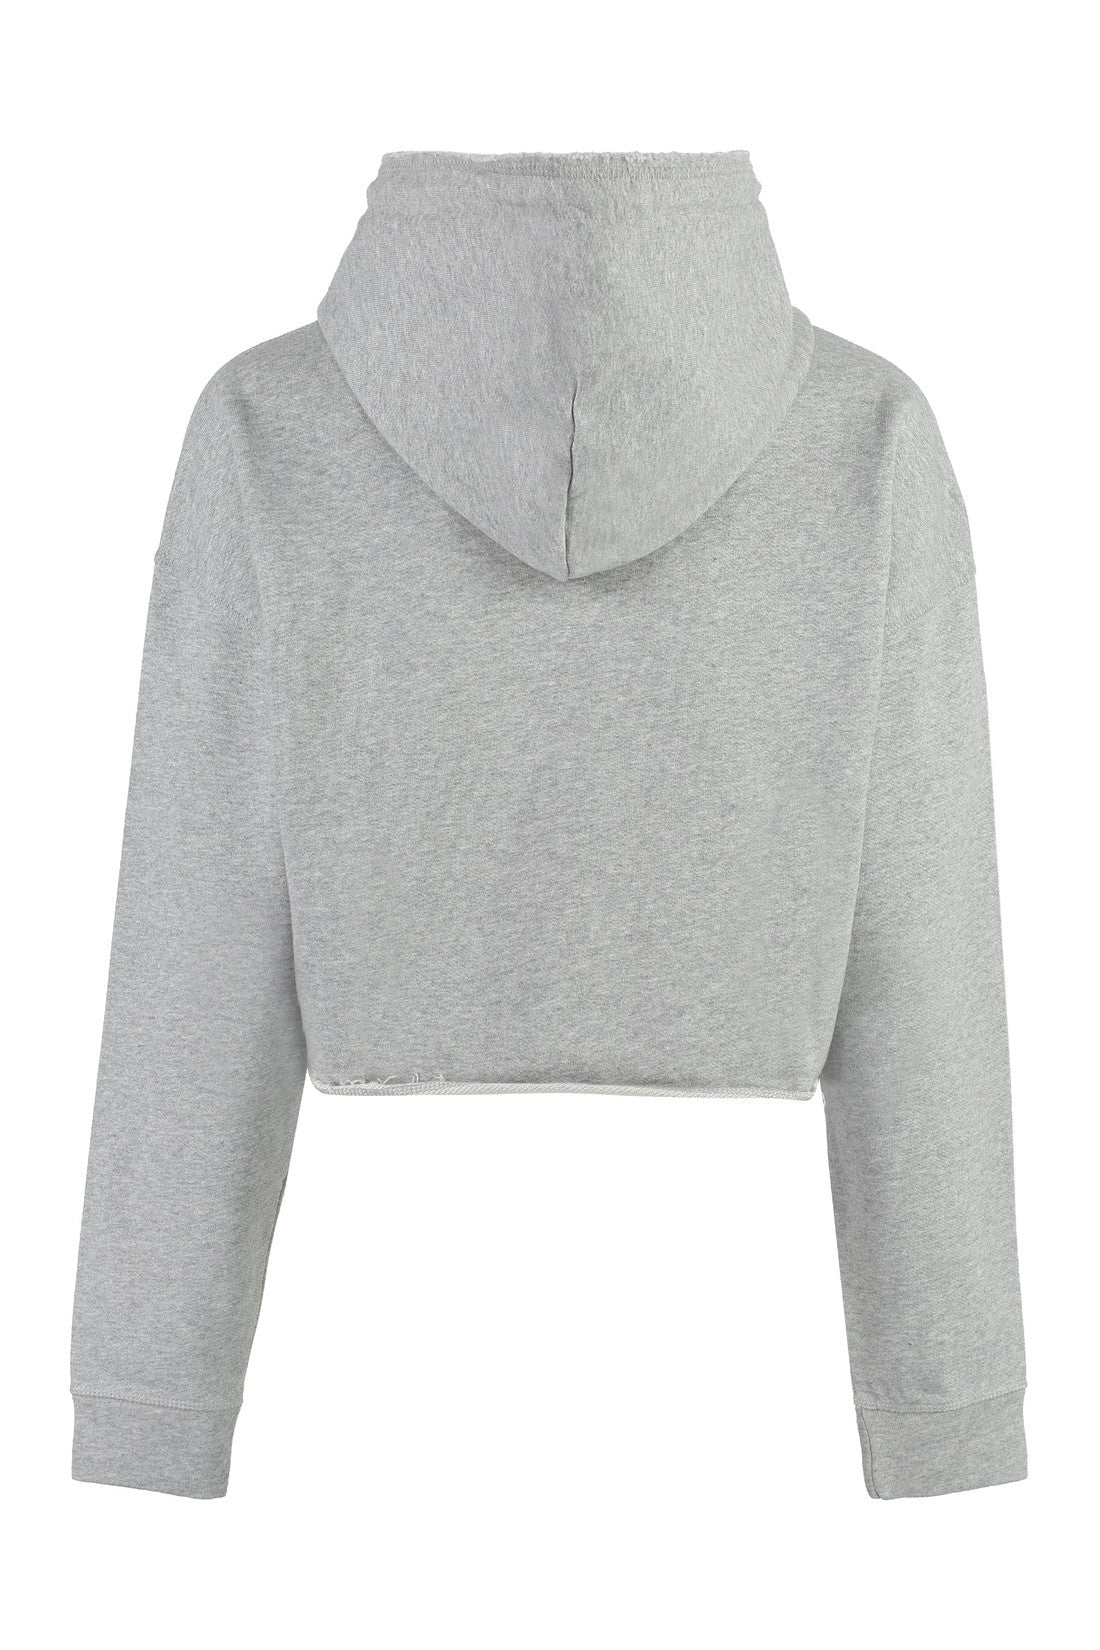 GANNI-OUTLET-SALE-Cotton hoodie-ARCHIVIST